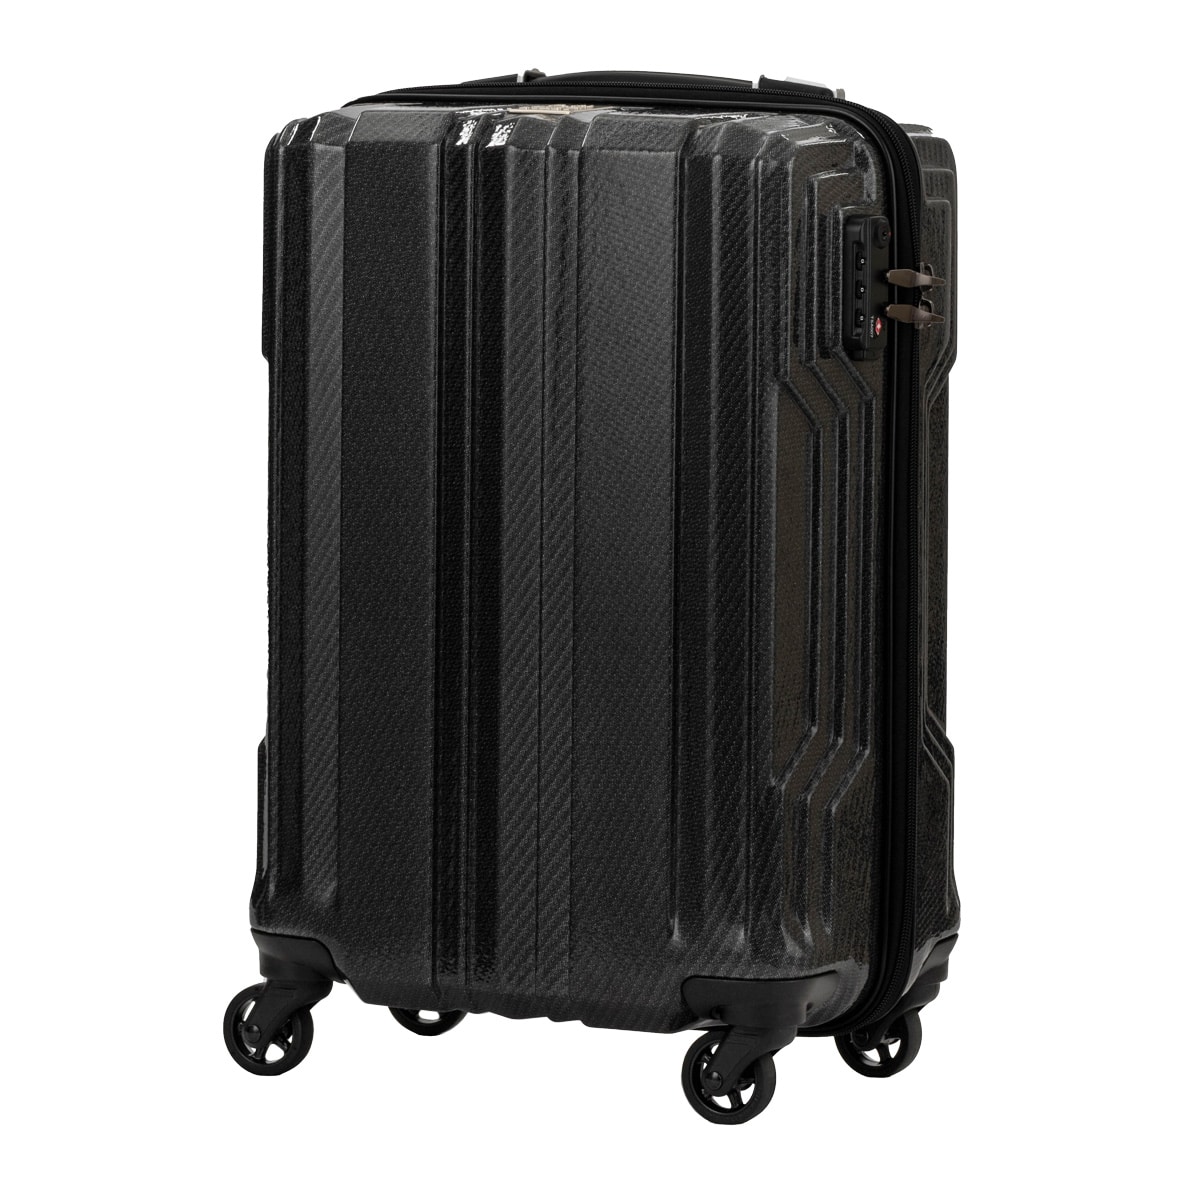 レジェンドウォーカー スーツケース 機内持ち込み 35L 48cm 2kg ブレイド 超軽量PCファイバー 5604-48 LEGENDWALKER  BLADE Ultralight｜ハード ファスナー キャリーケース キャリーバッグ LCC 防犯ファスナー 1年保証